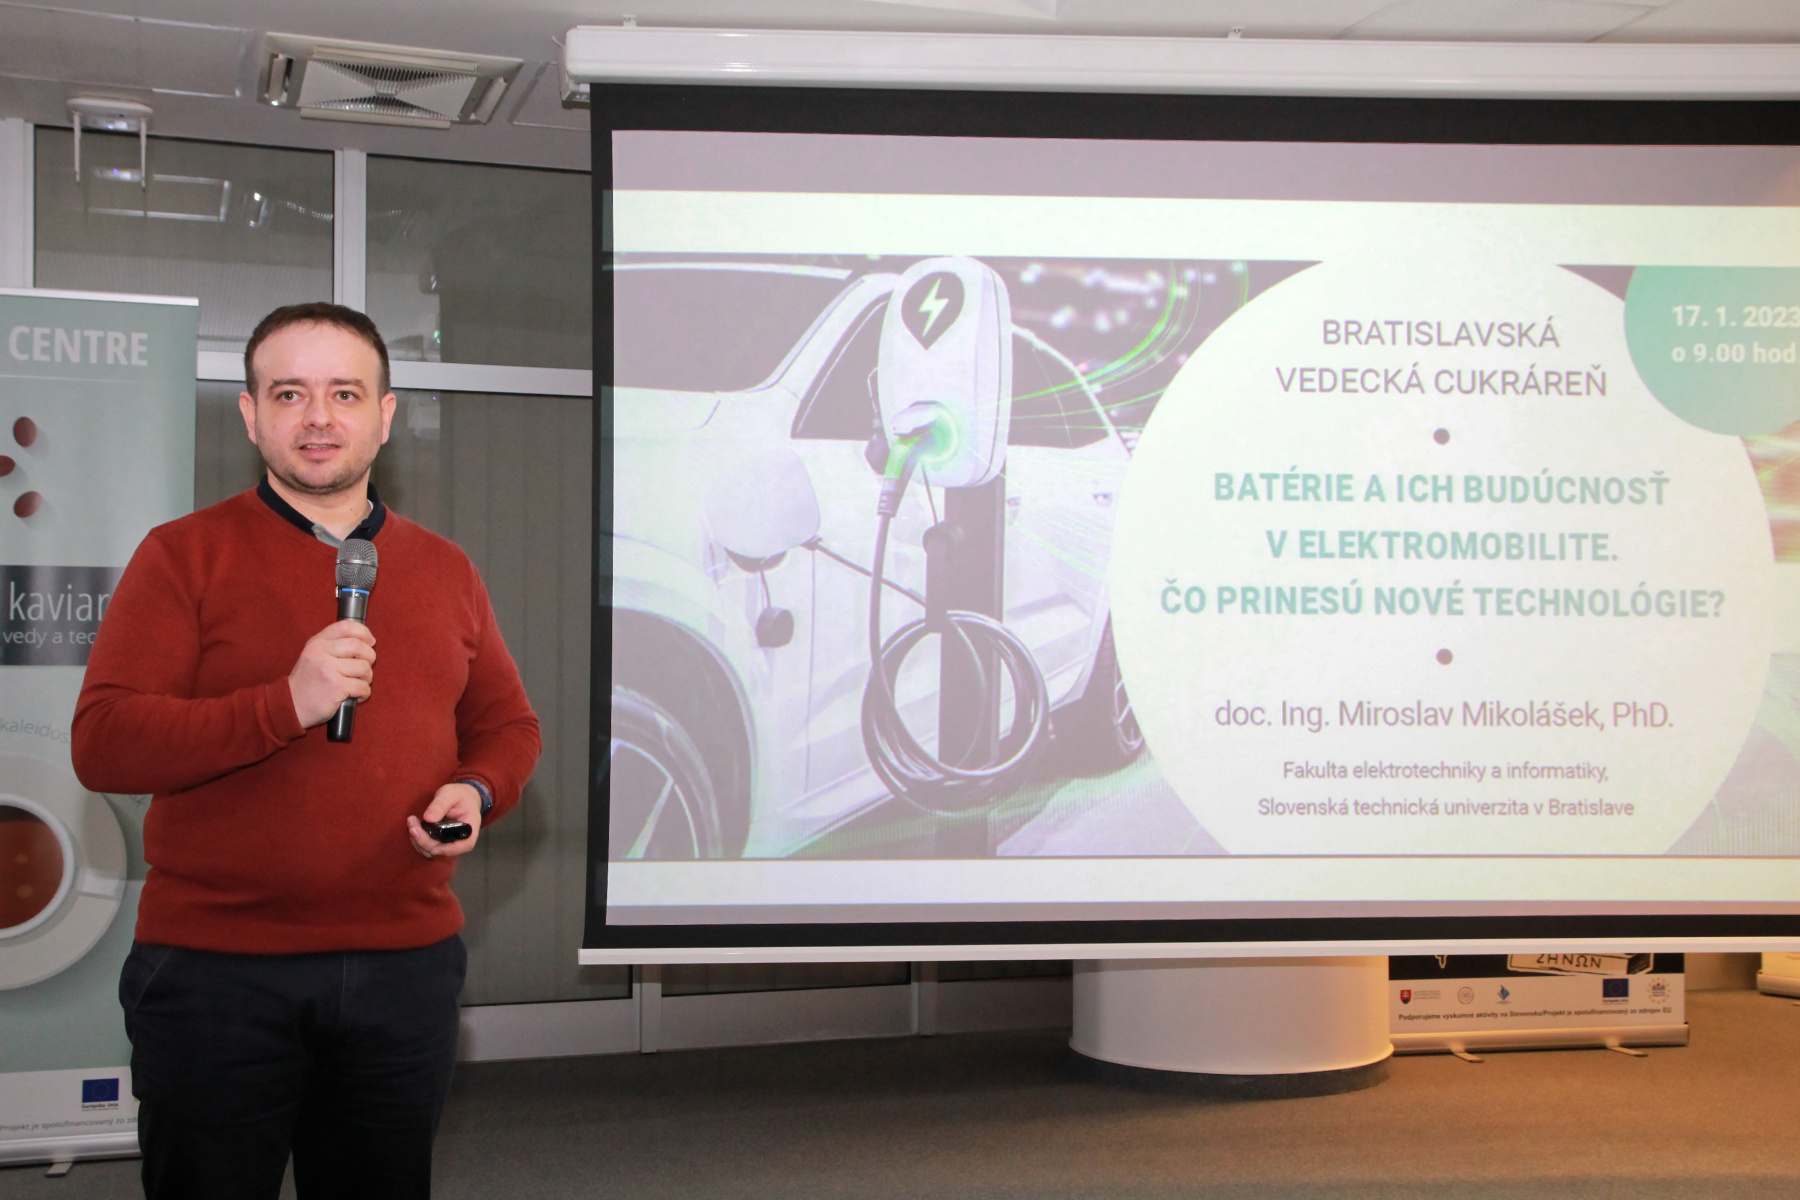 Batérie a ich budúcnosť v elektromobilite. Čo prinesú nové technológie? – doc. Ing. Miroslav Mikolášek, PhD.